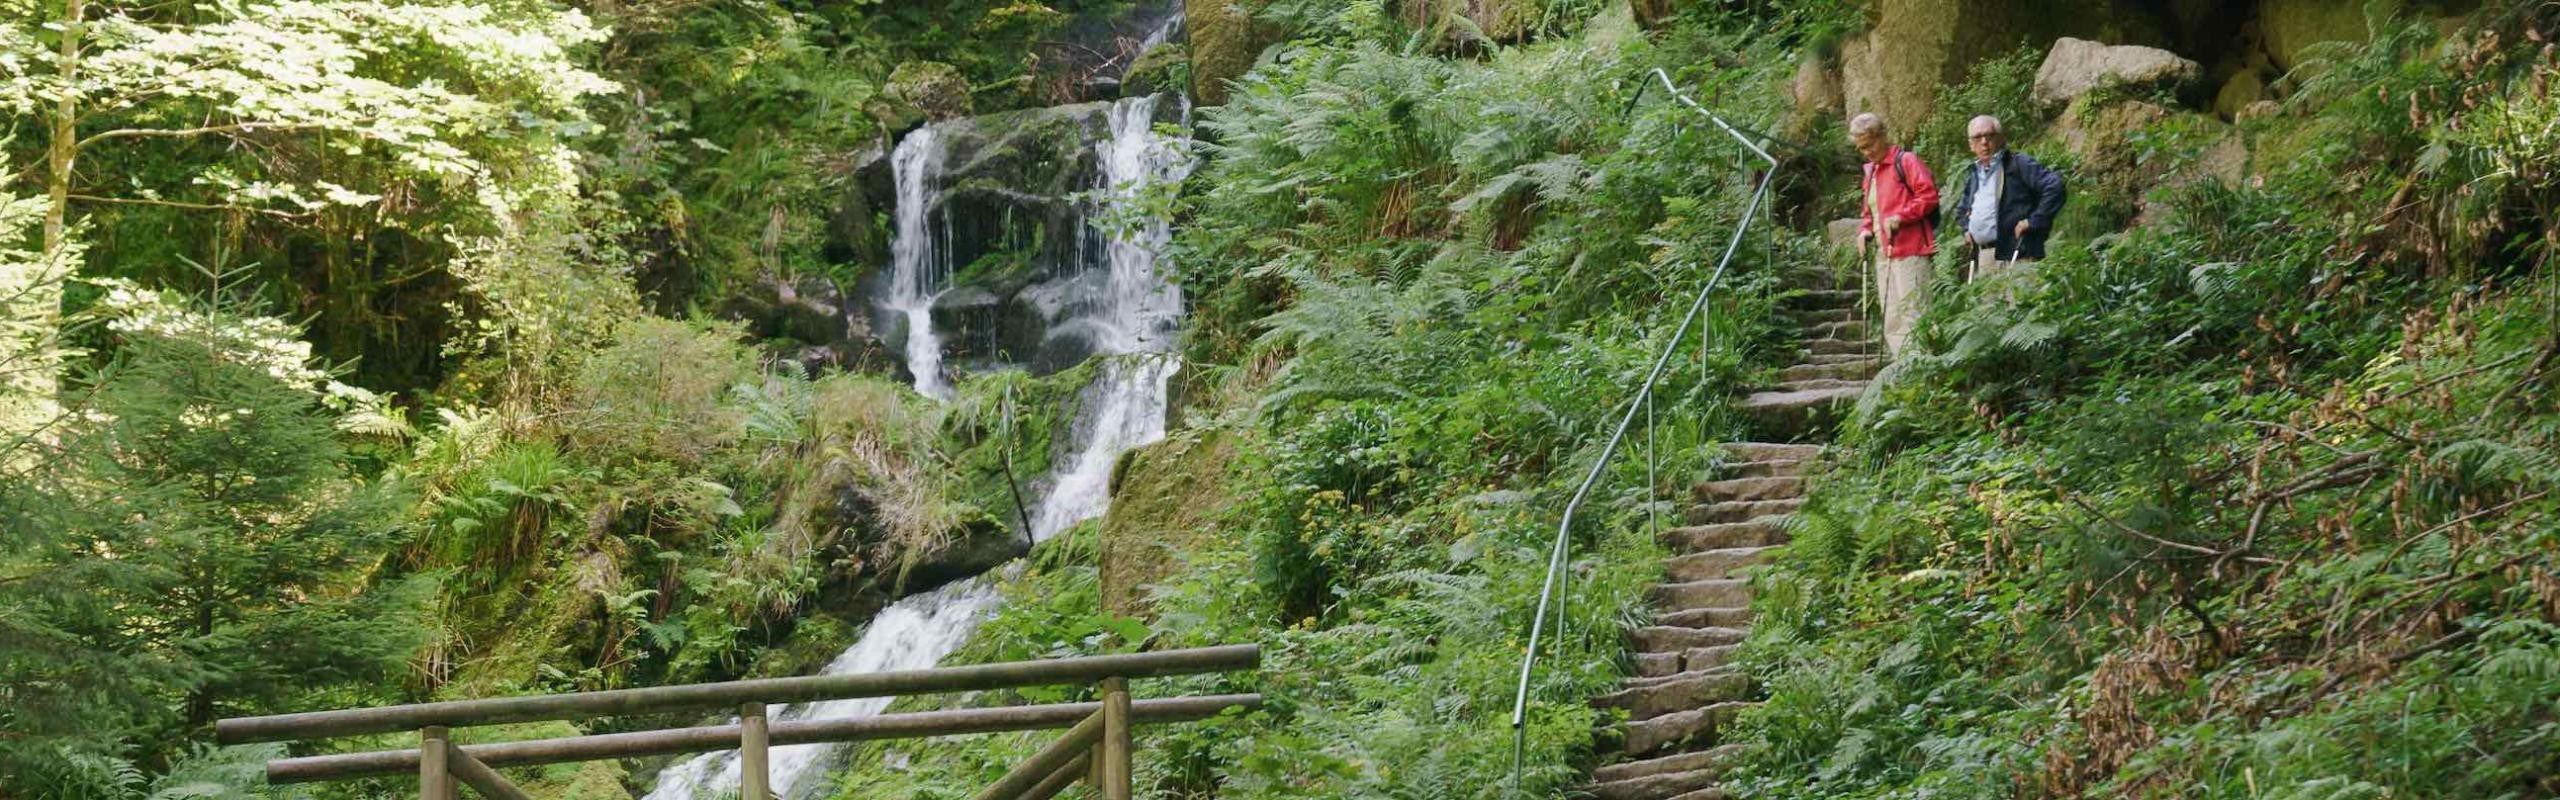 Das Bild zeigt zwei ältere Personen, die Steintreppen hochwanden und dabei Wasserfälle beobachten. Im unteren Bildbereich ist noch das Geländer einer kleinen Holzbrücke zu sehen 